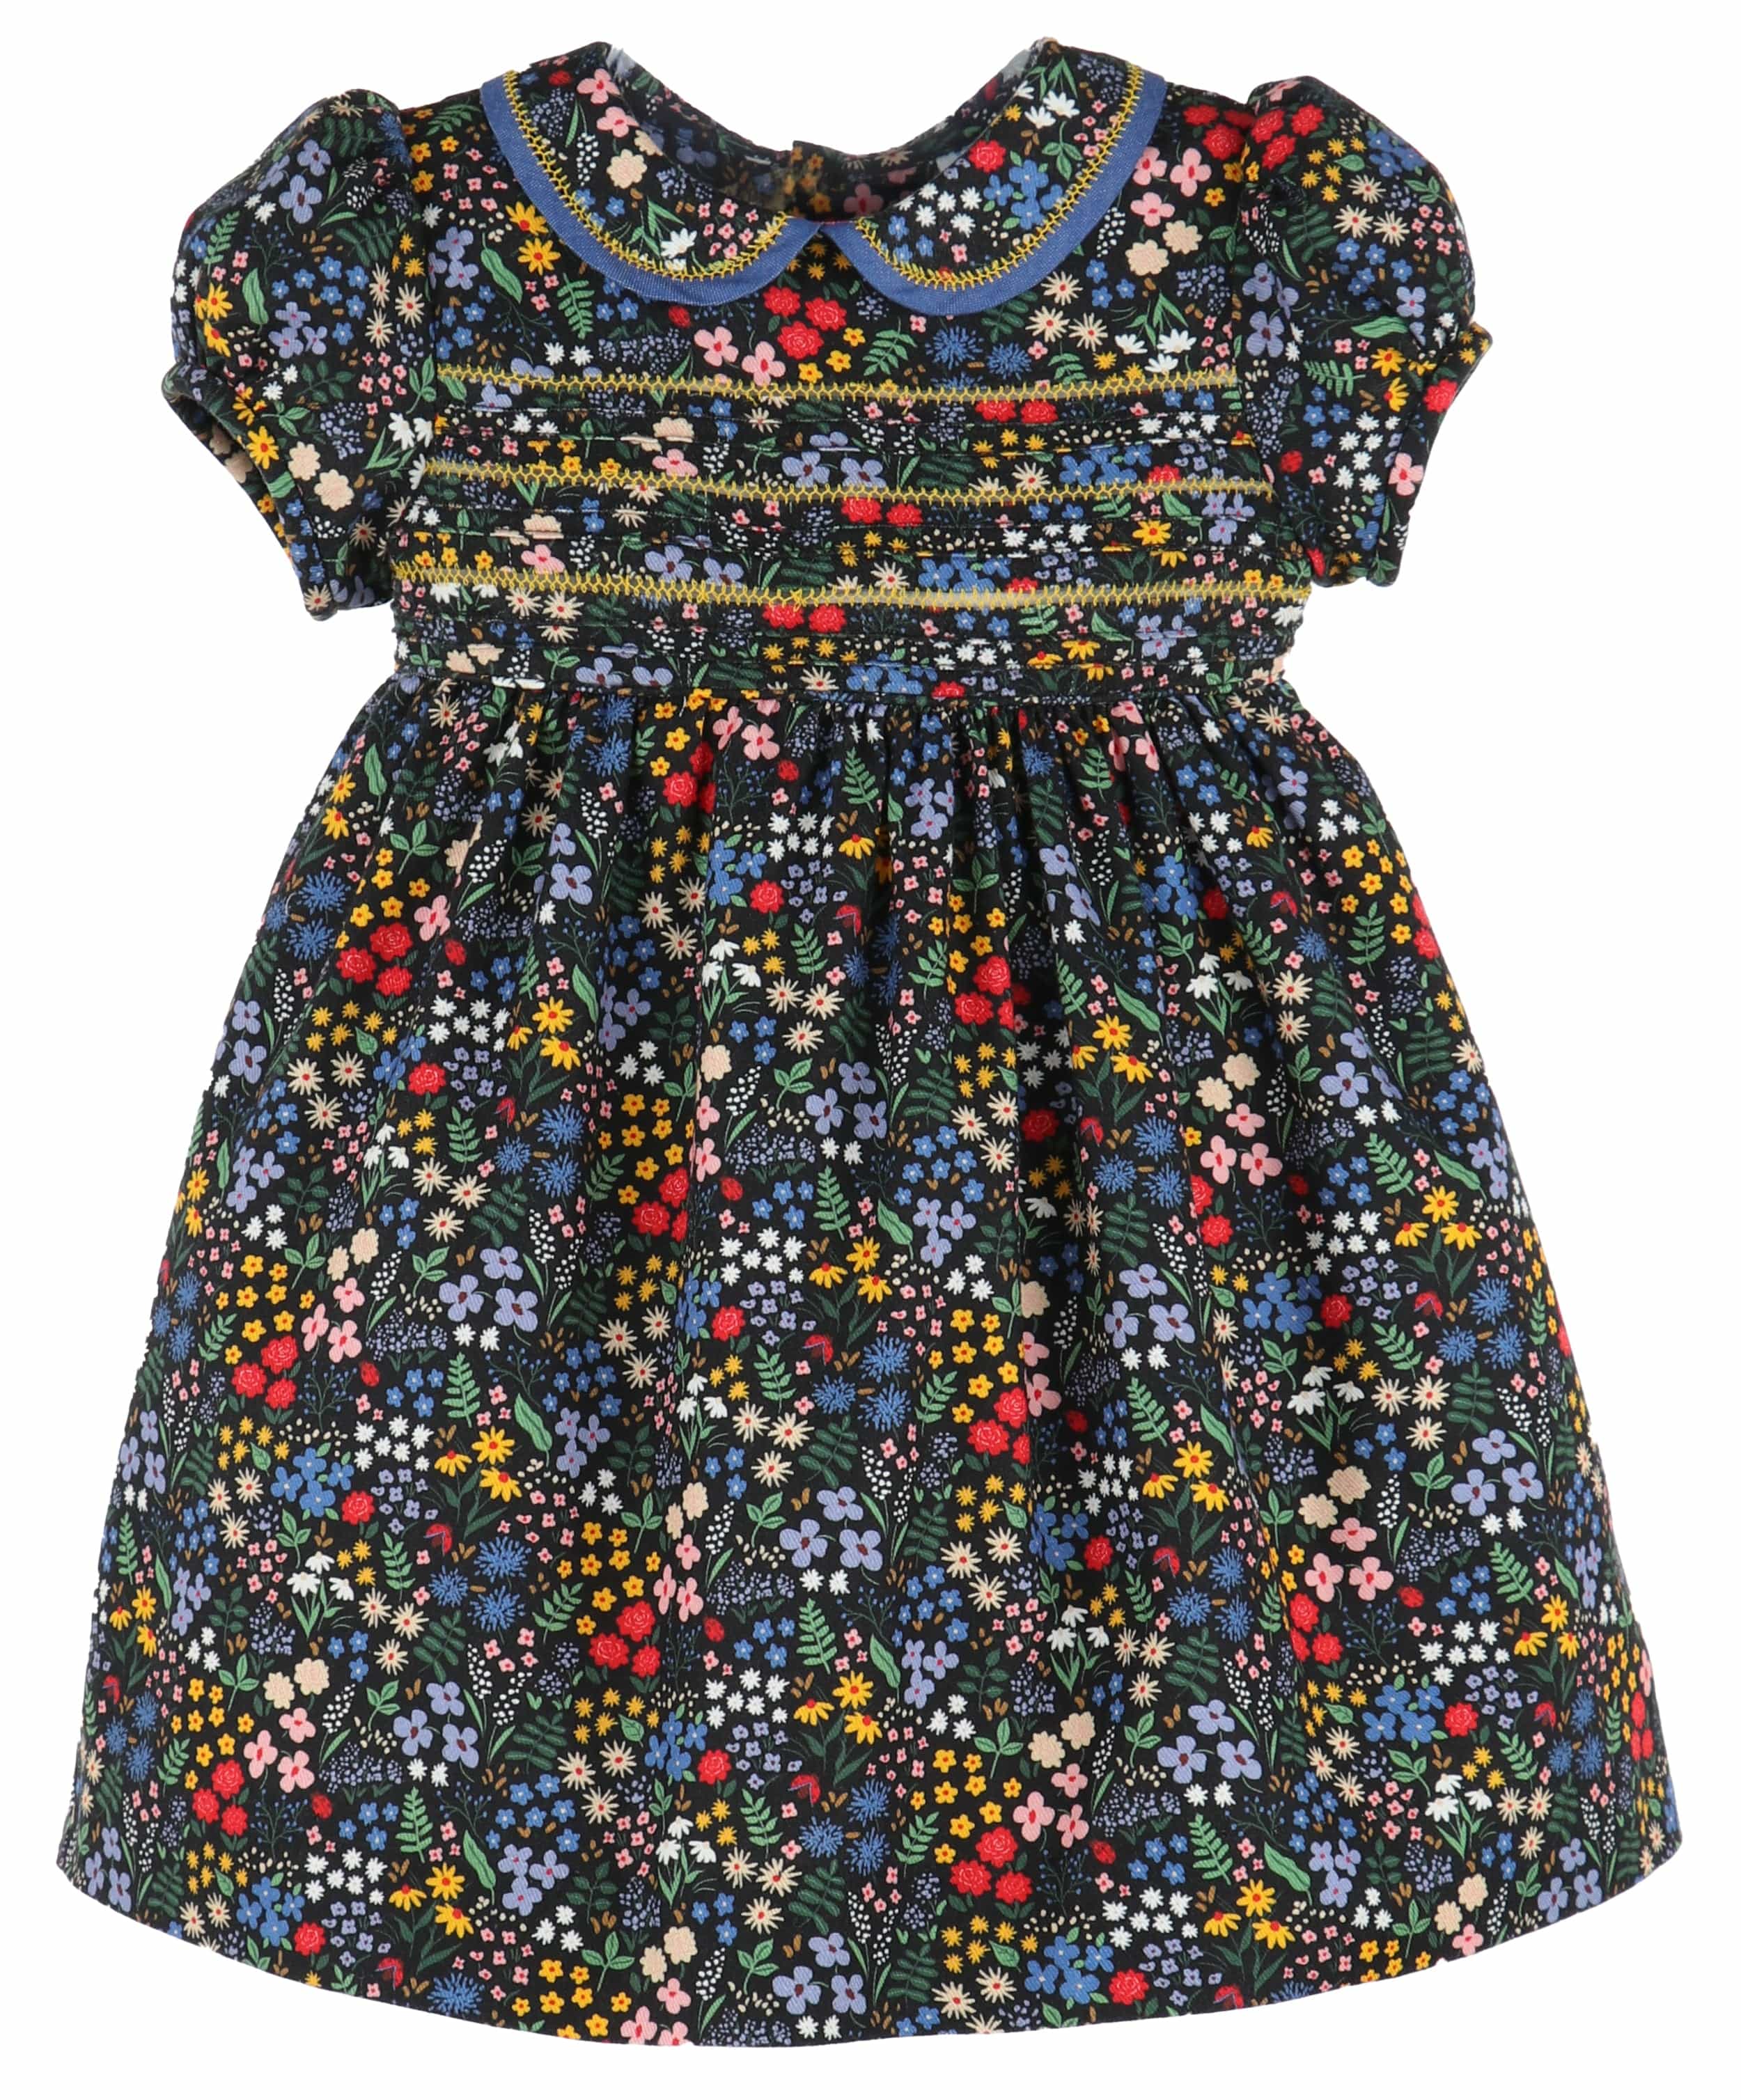 C&A - Casero & Associates Casero & Associates Midnight Garden Dress - Little Miss Muffin Children & Home